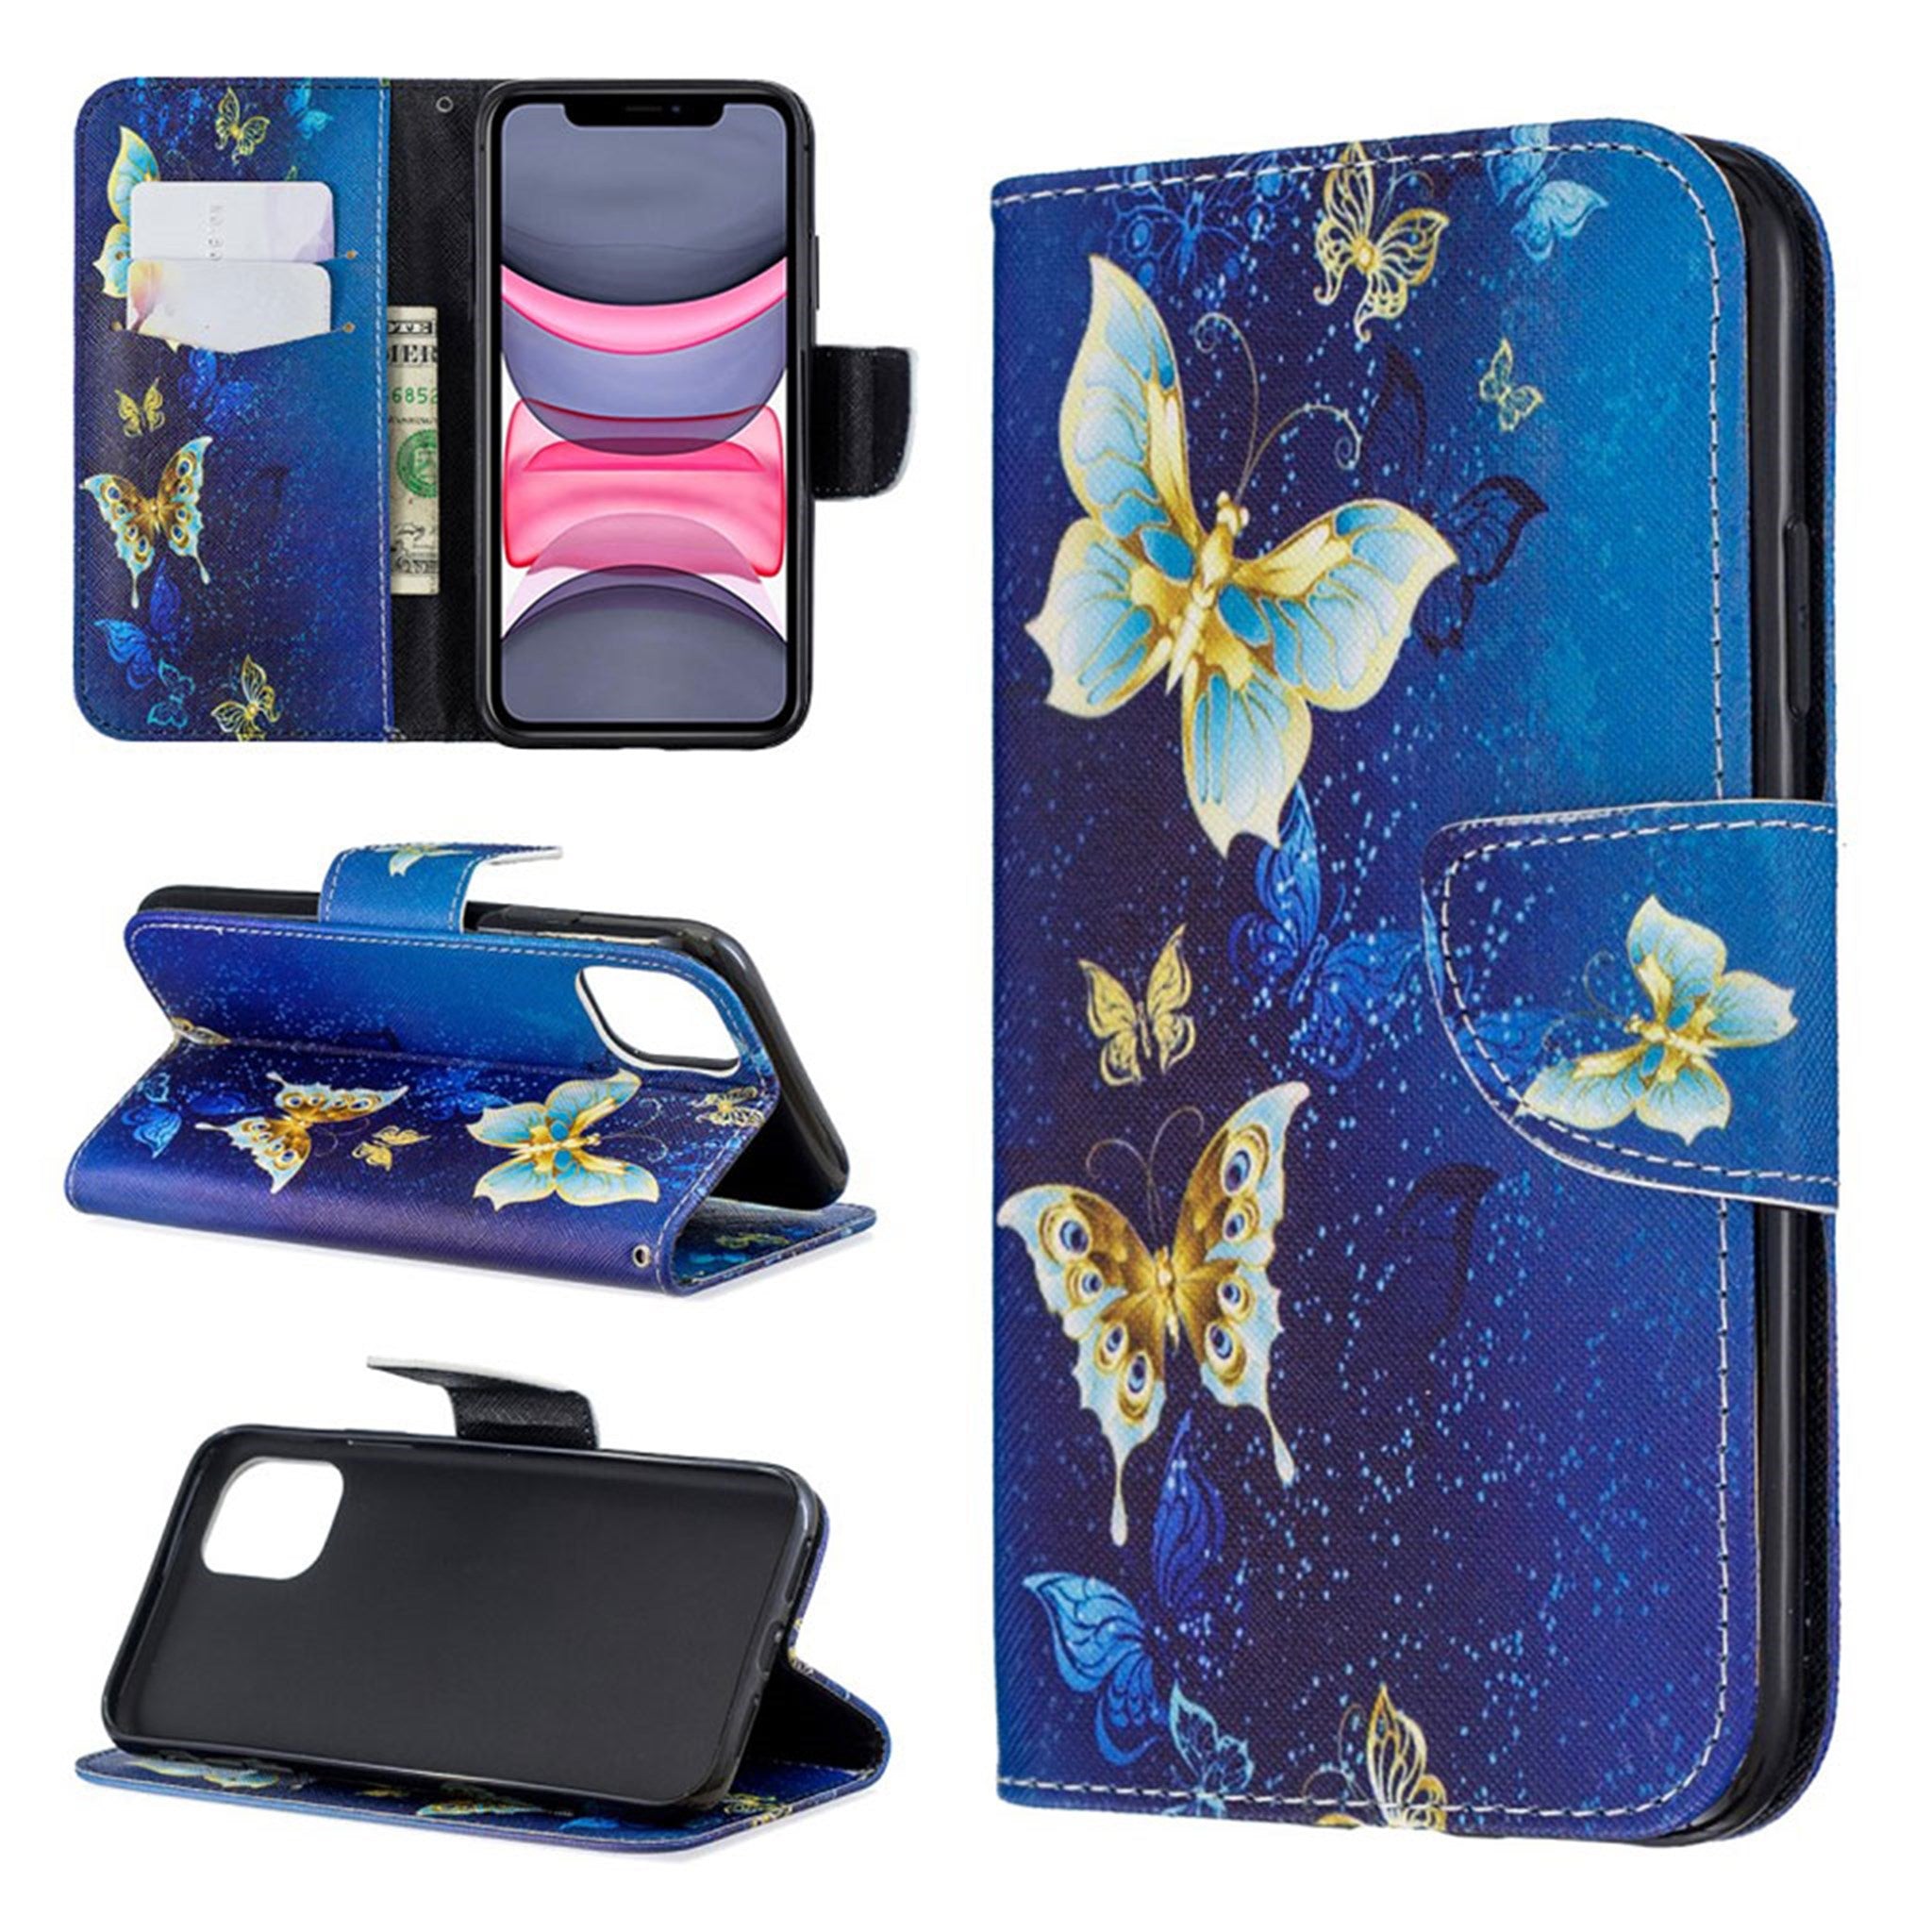 Wonderland iPhone 11 flip case - Gold Butterflies